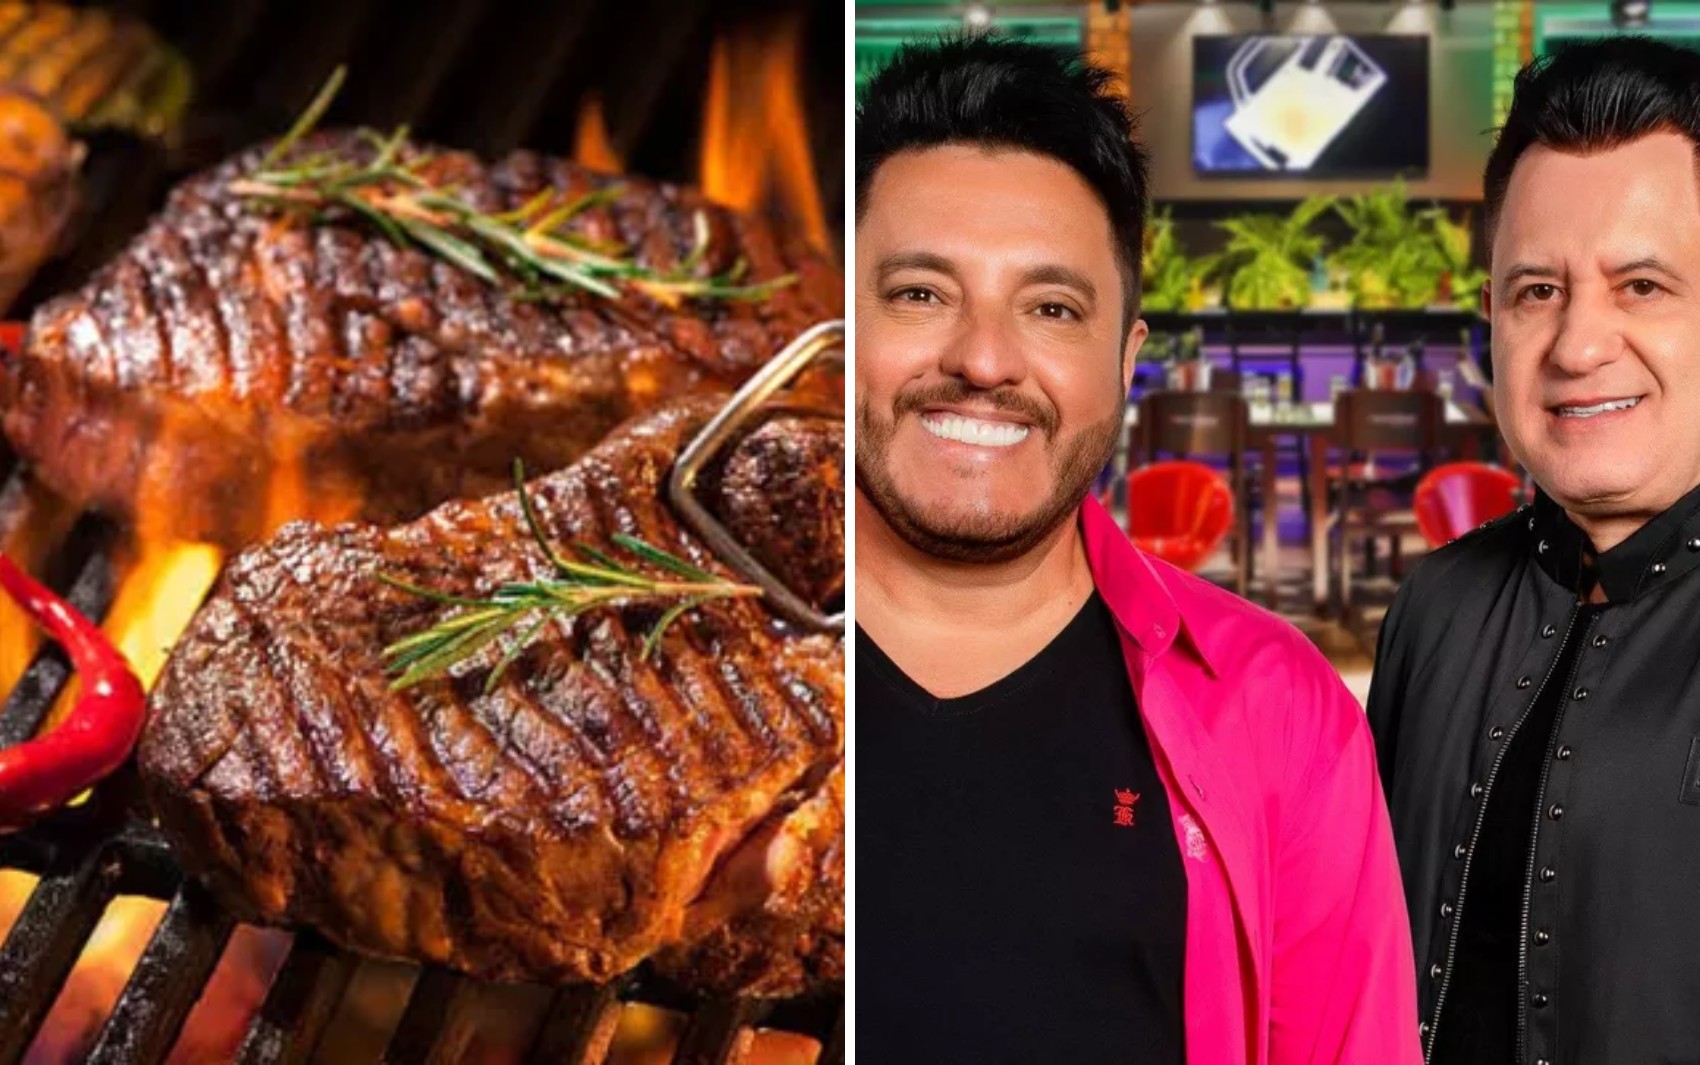 Maior churrasco do mundo, BBQ Mix reúne especialistas em carne e shows de Bruno e Marrone e Barões da Pisadinha em Goiânia